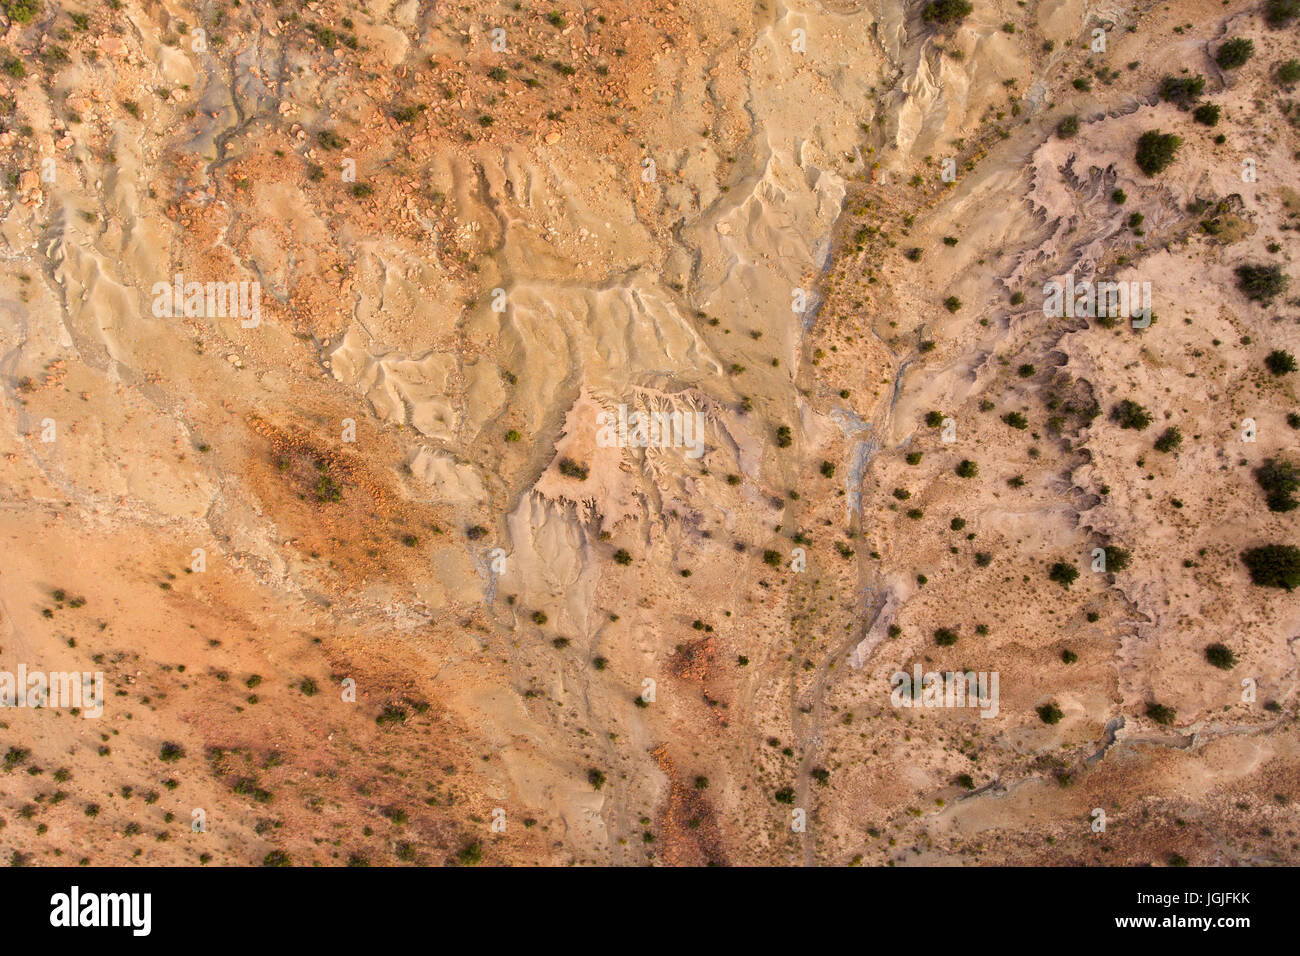 Vue aérienne d'une grave érosion du sol dans une région aride de l'Afrique du Sud Banque D'Images